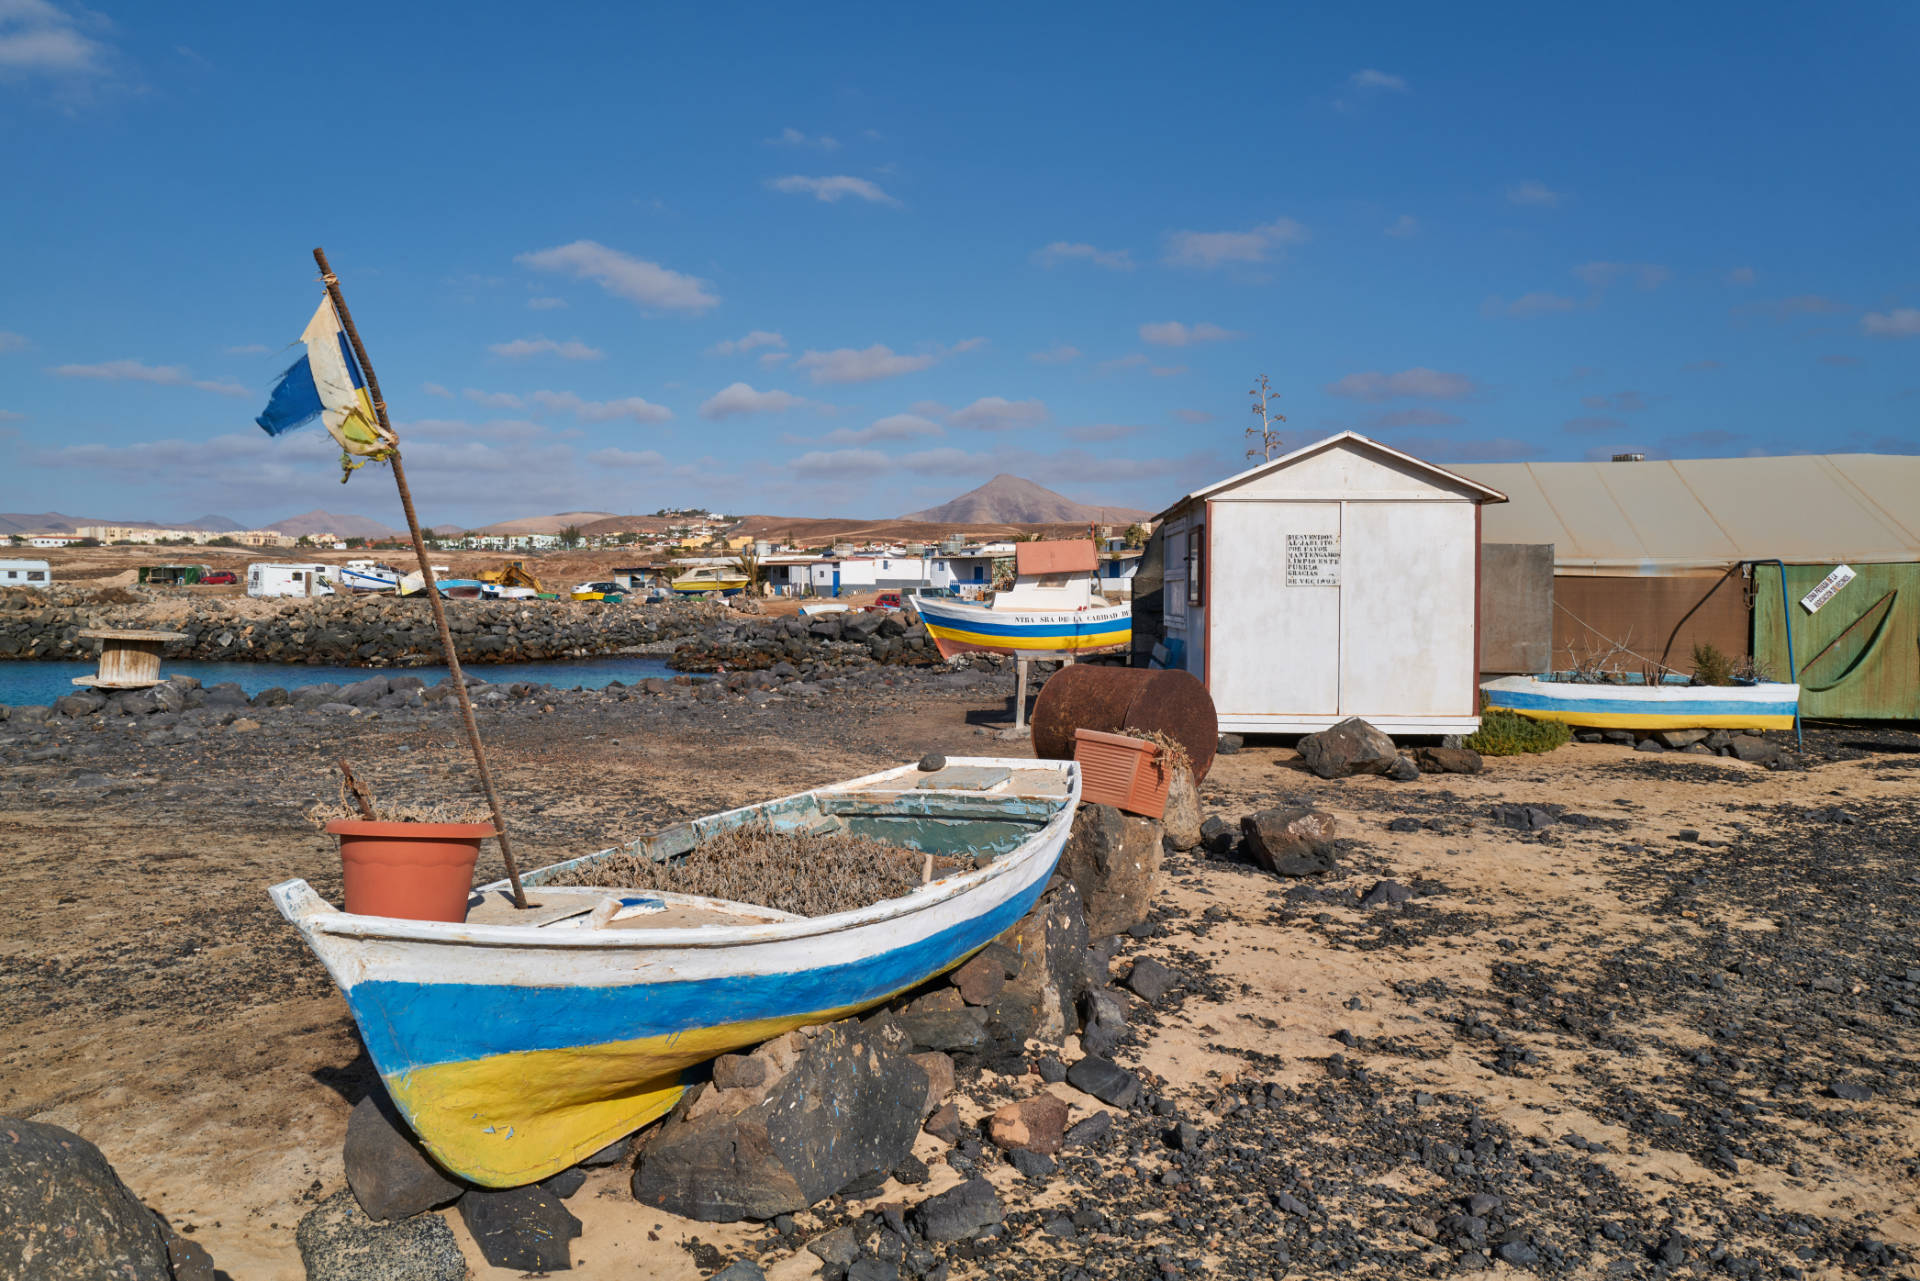 El Jablito El Jablé Fuerteventura.